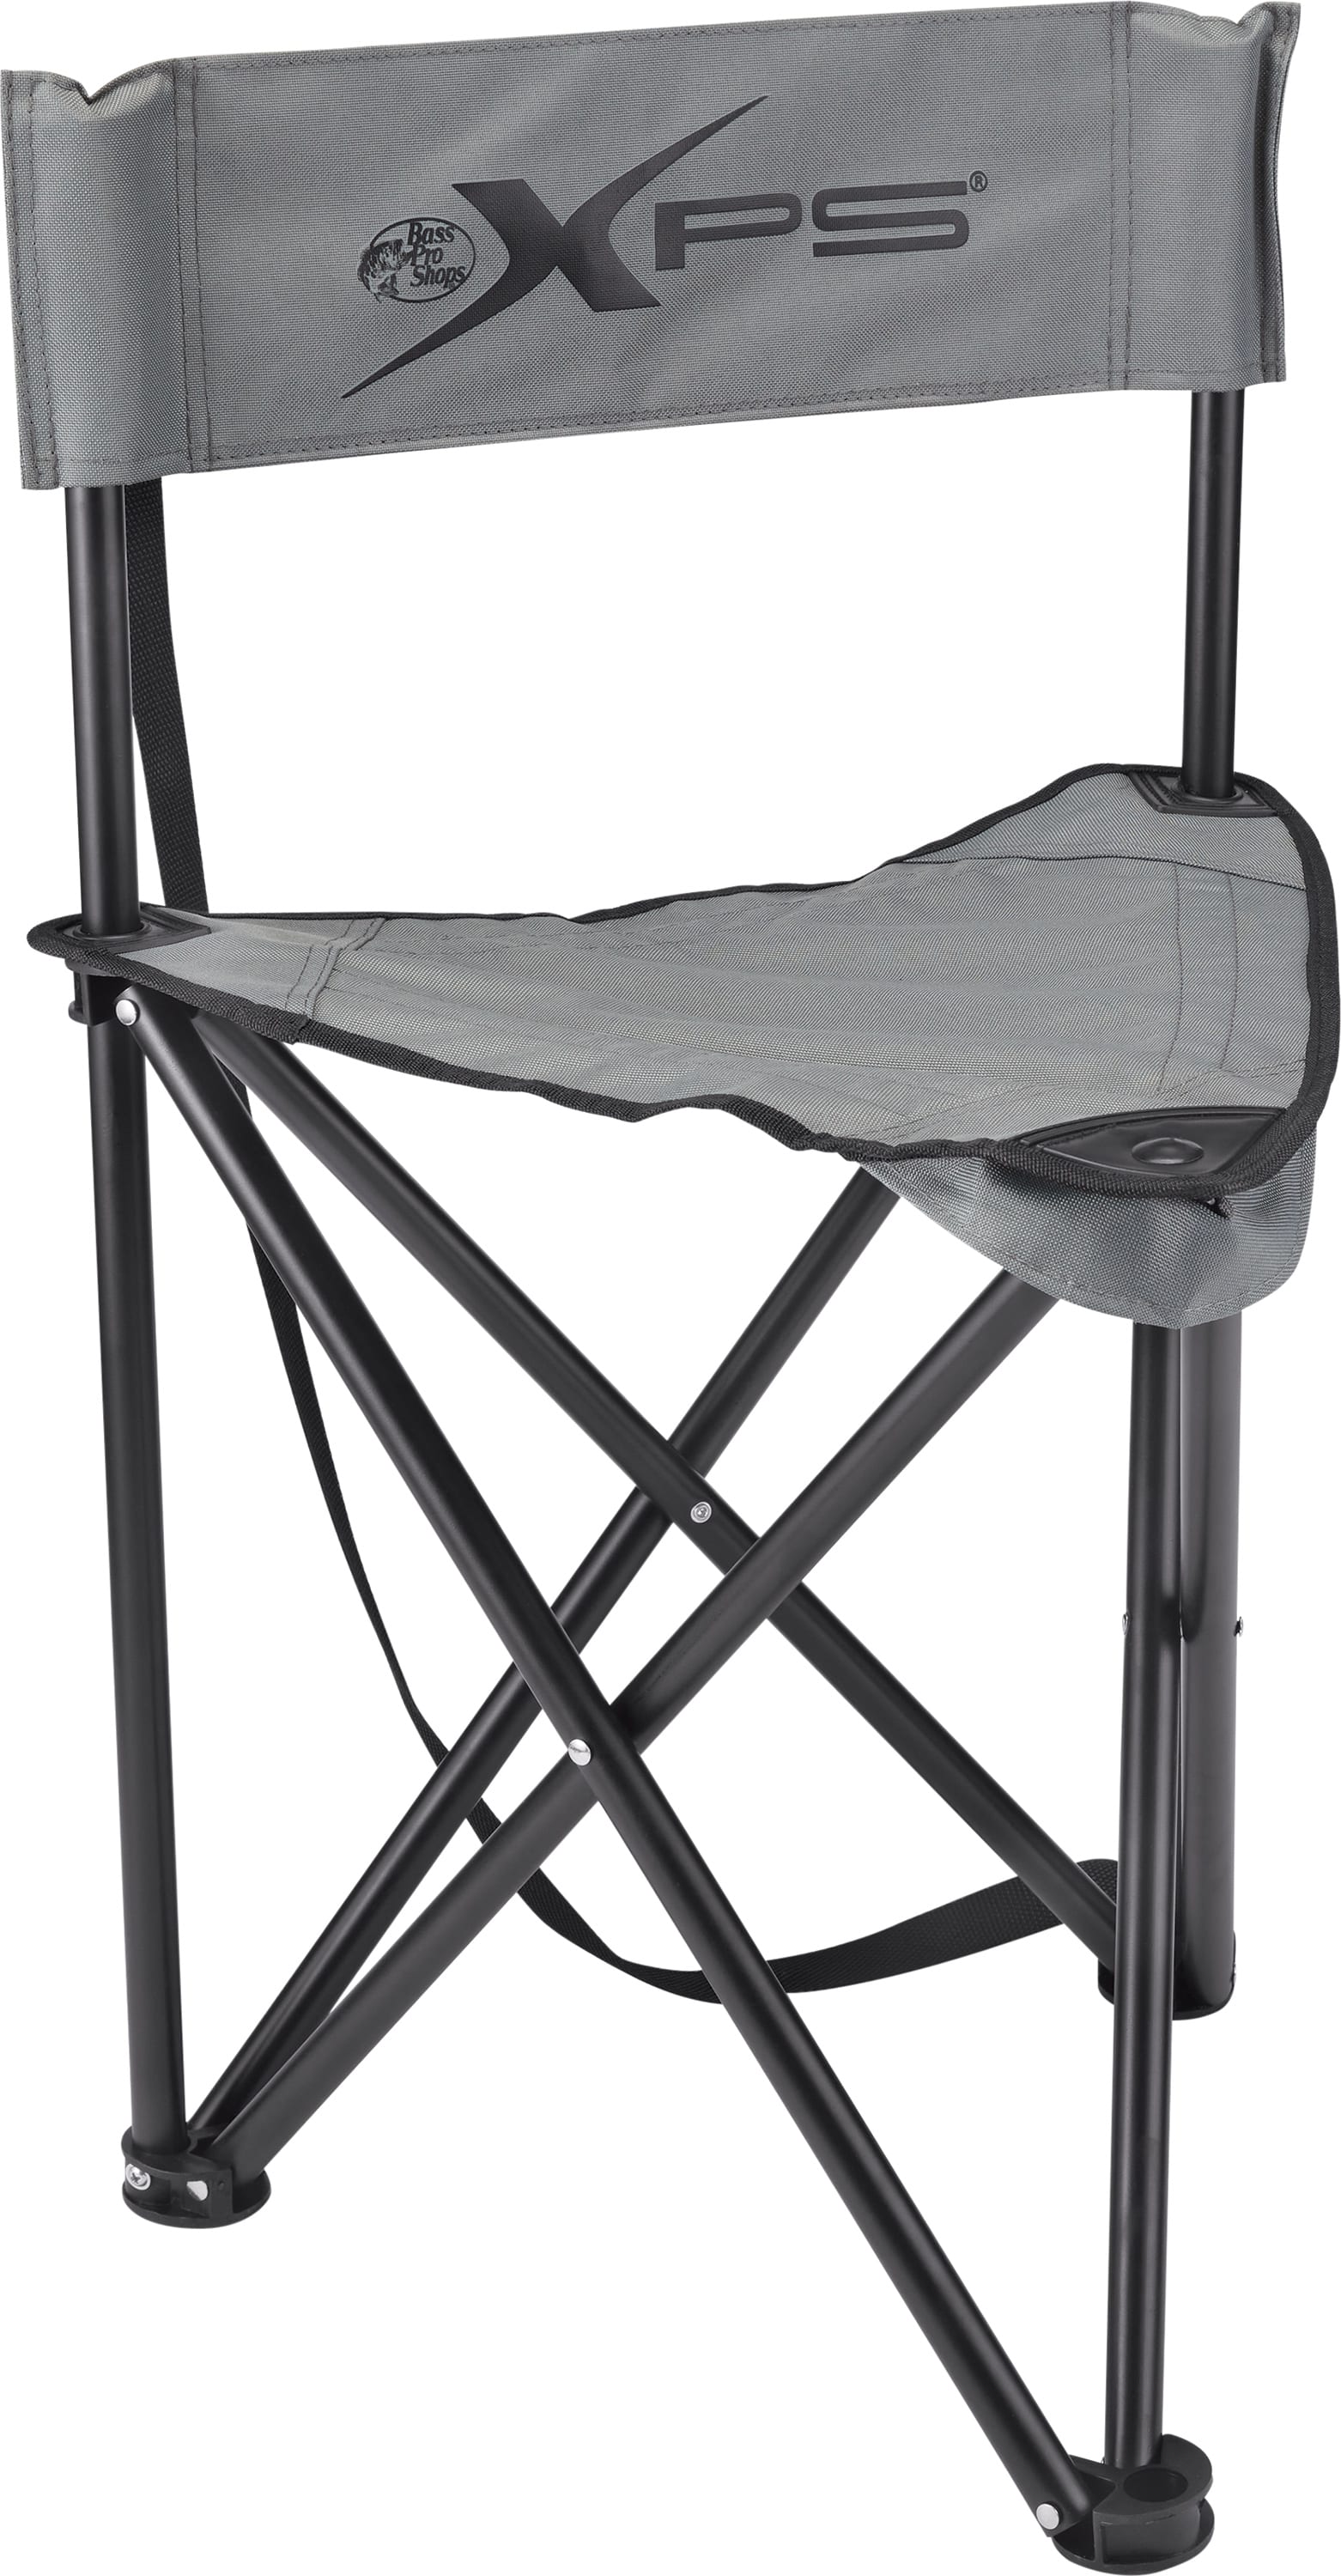 Bass Pro Shops® XPS® Folding Ice Fishing Chair